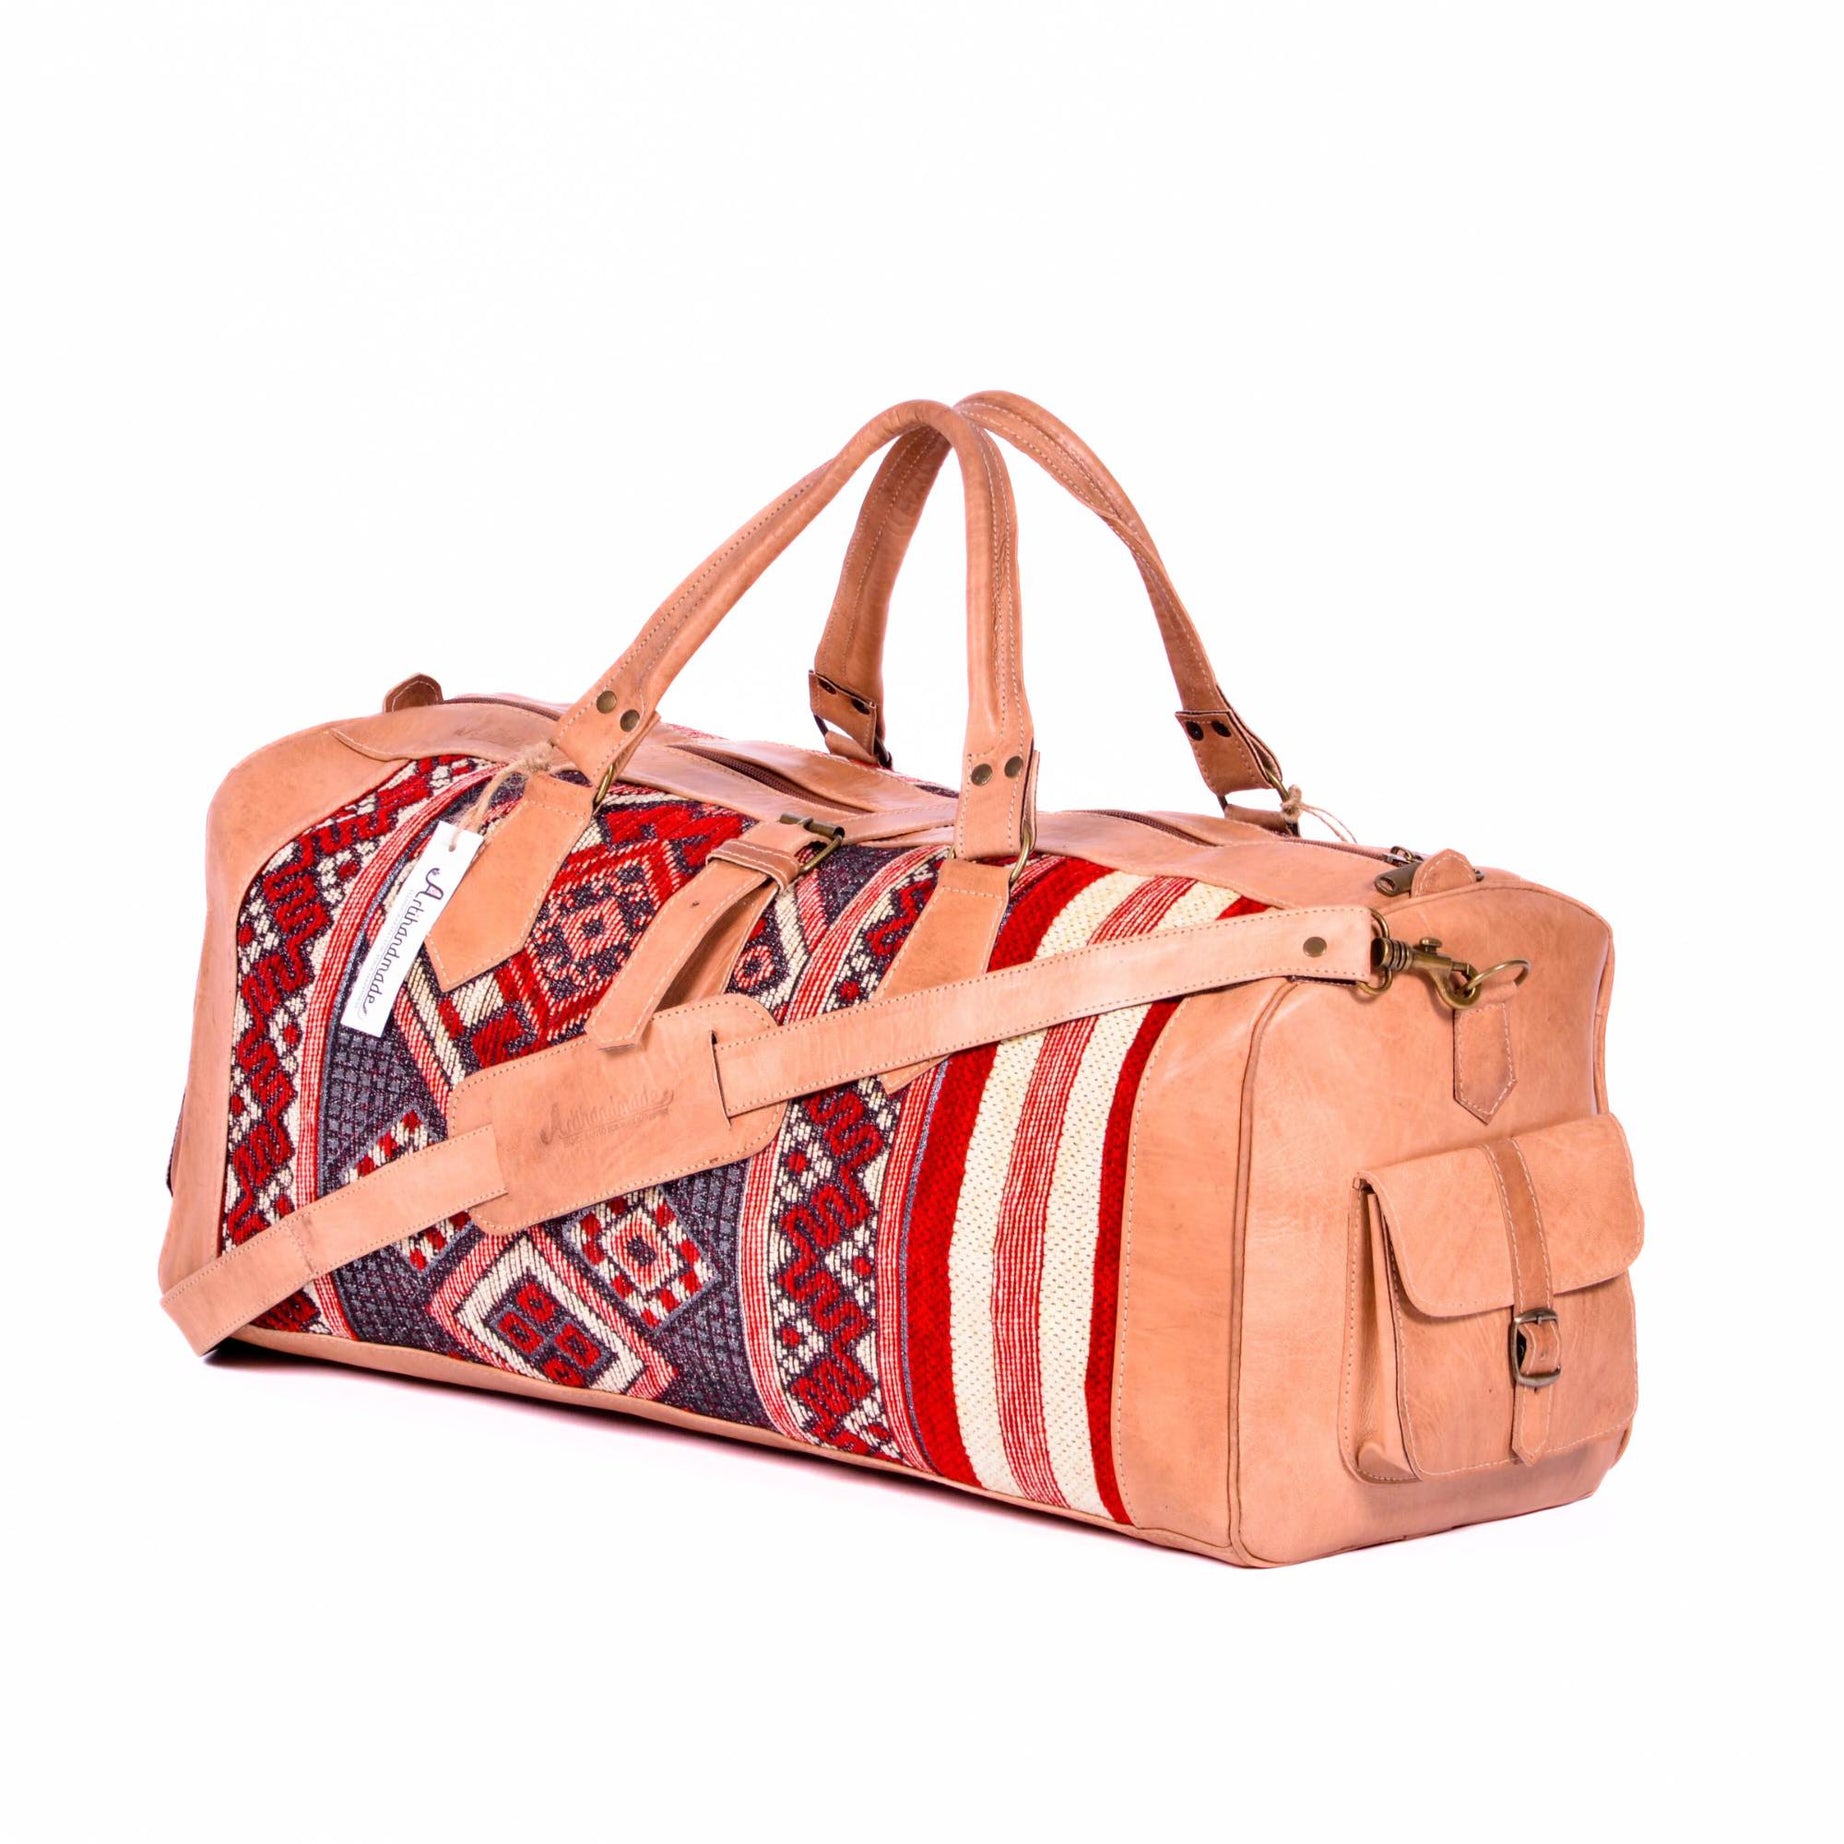 Artisan Leather & Kilim Travel Duffel Bag - Tan Natural